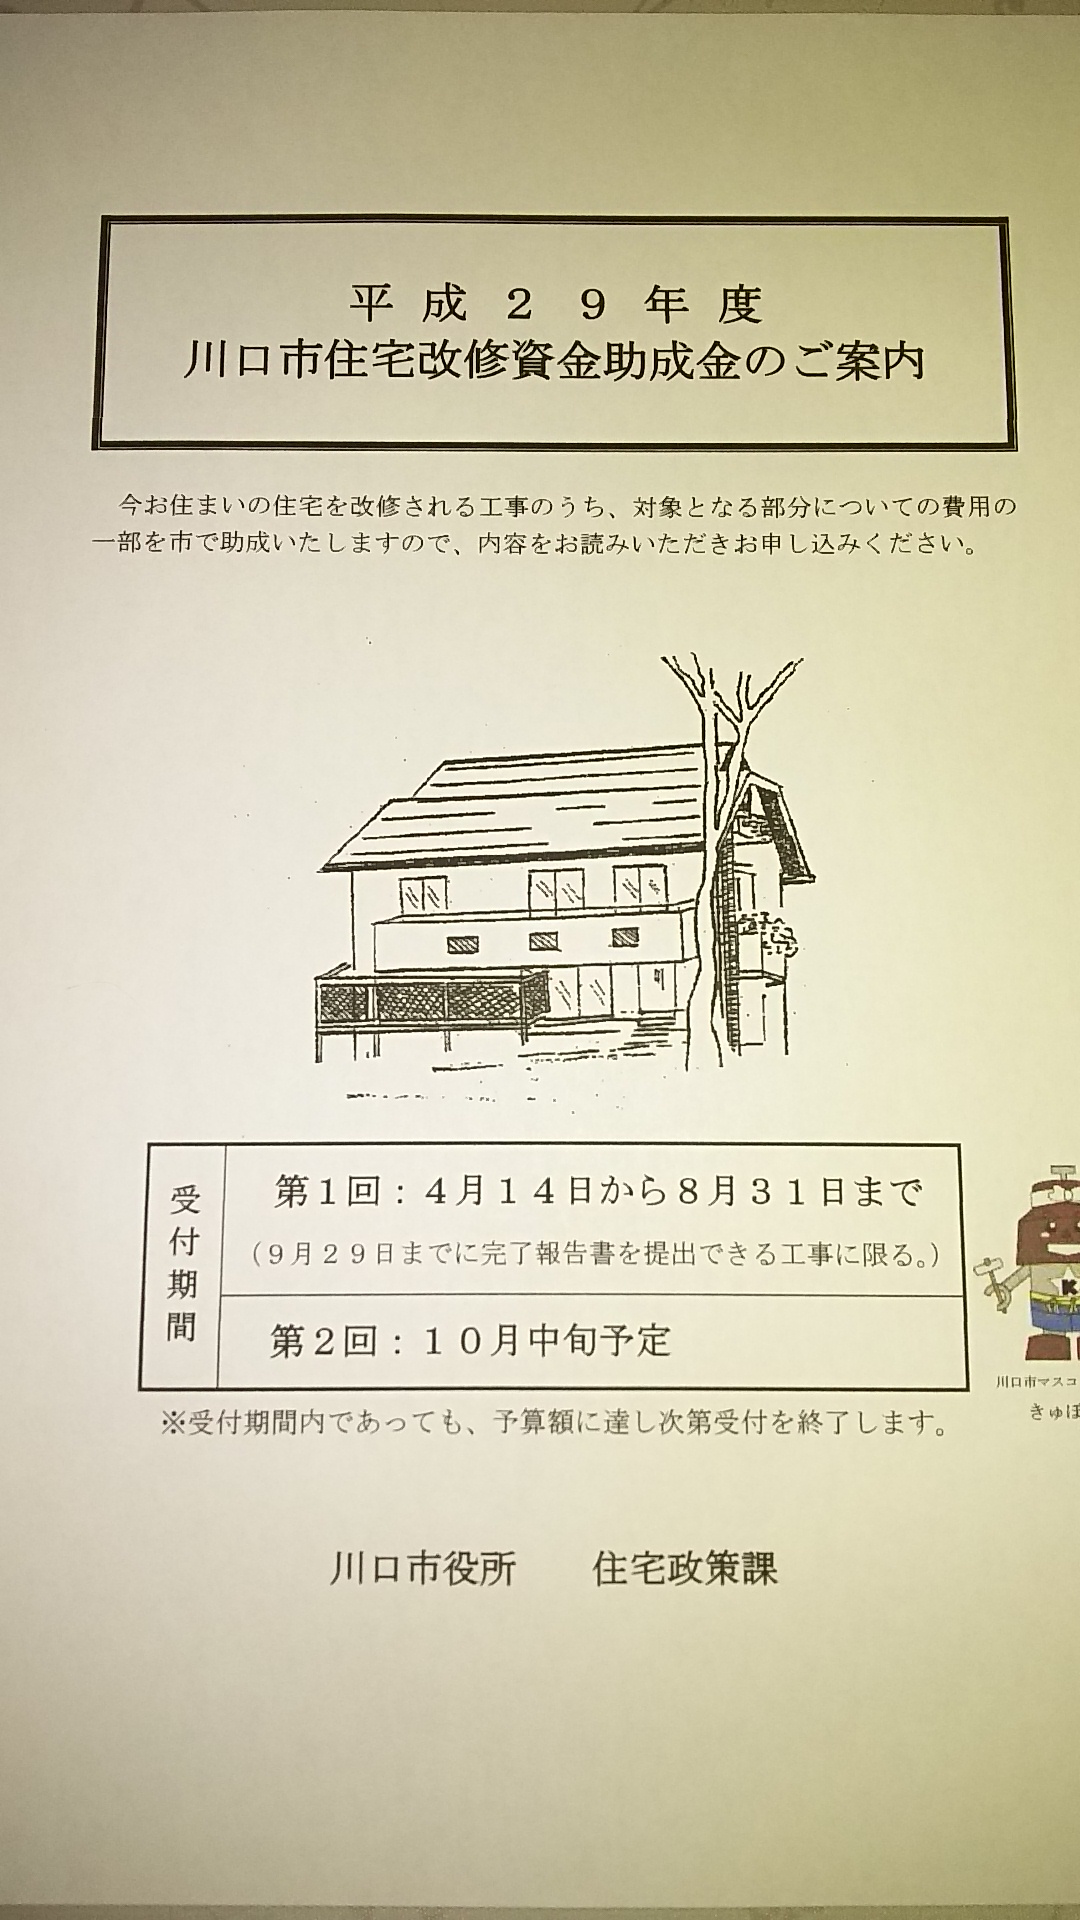 埼玉県住宅改修資金助成金制度